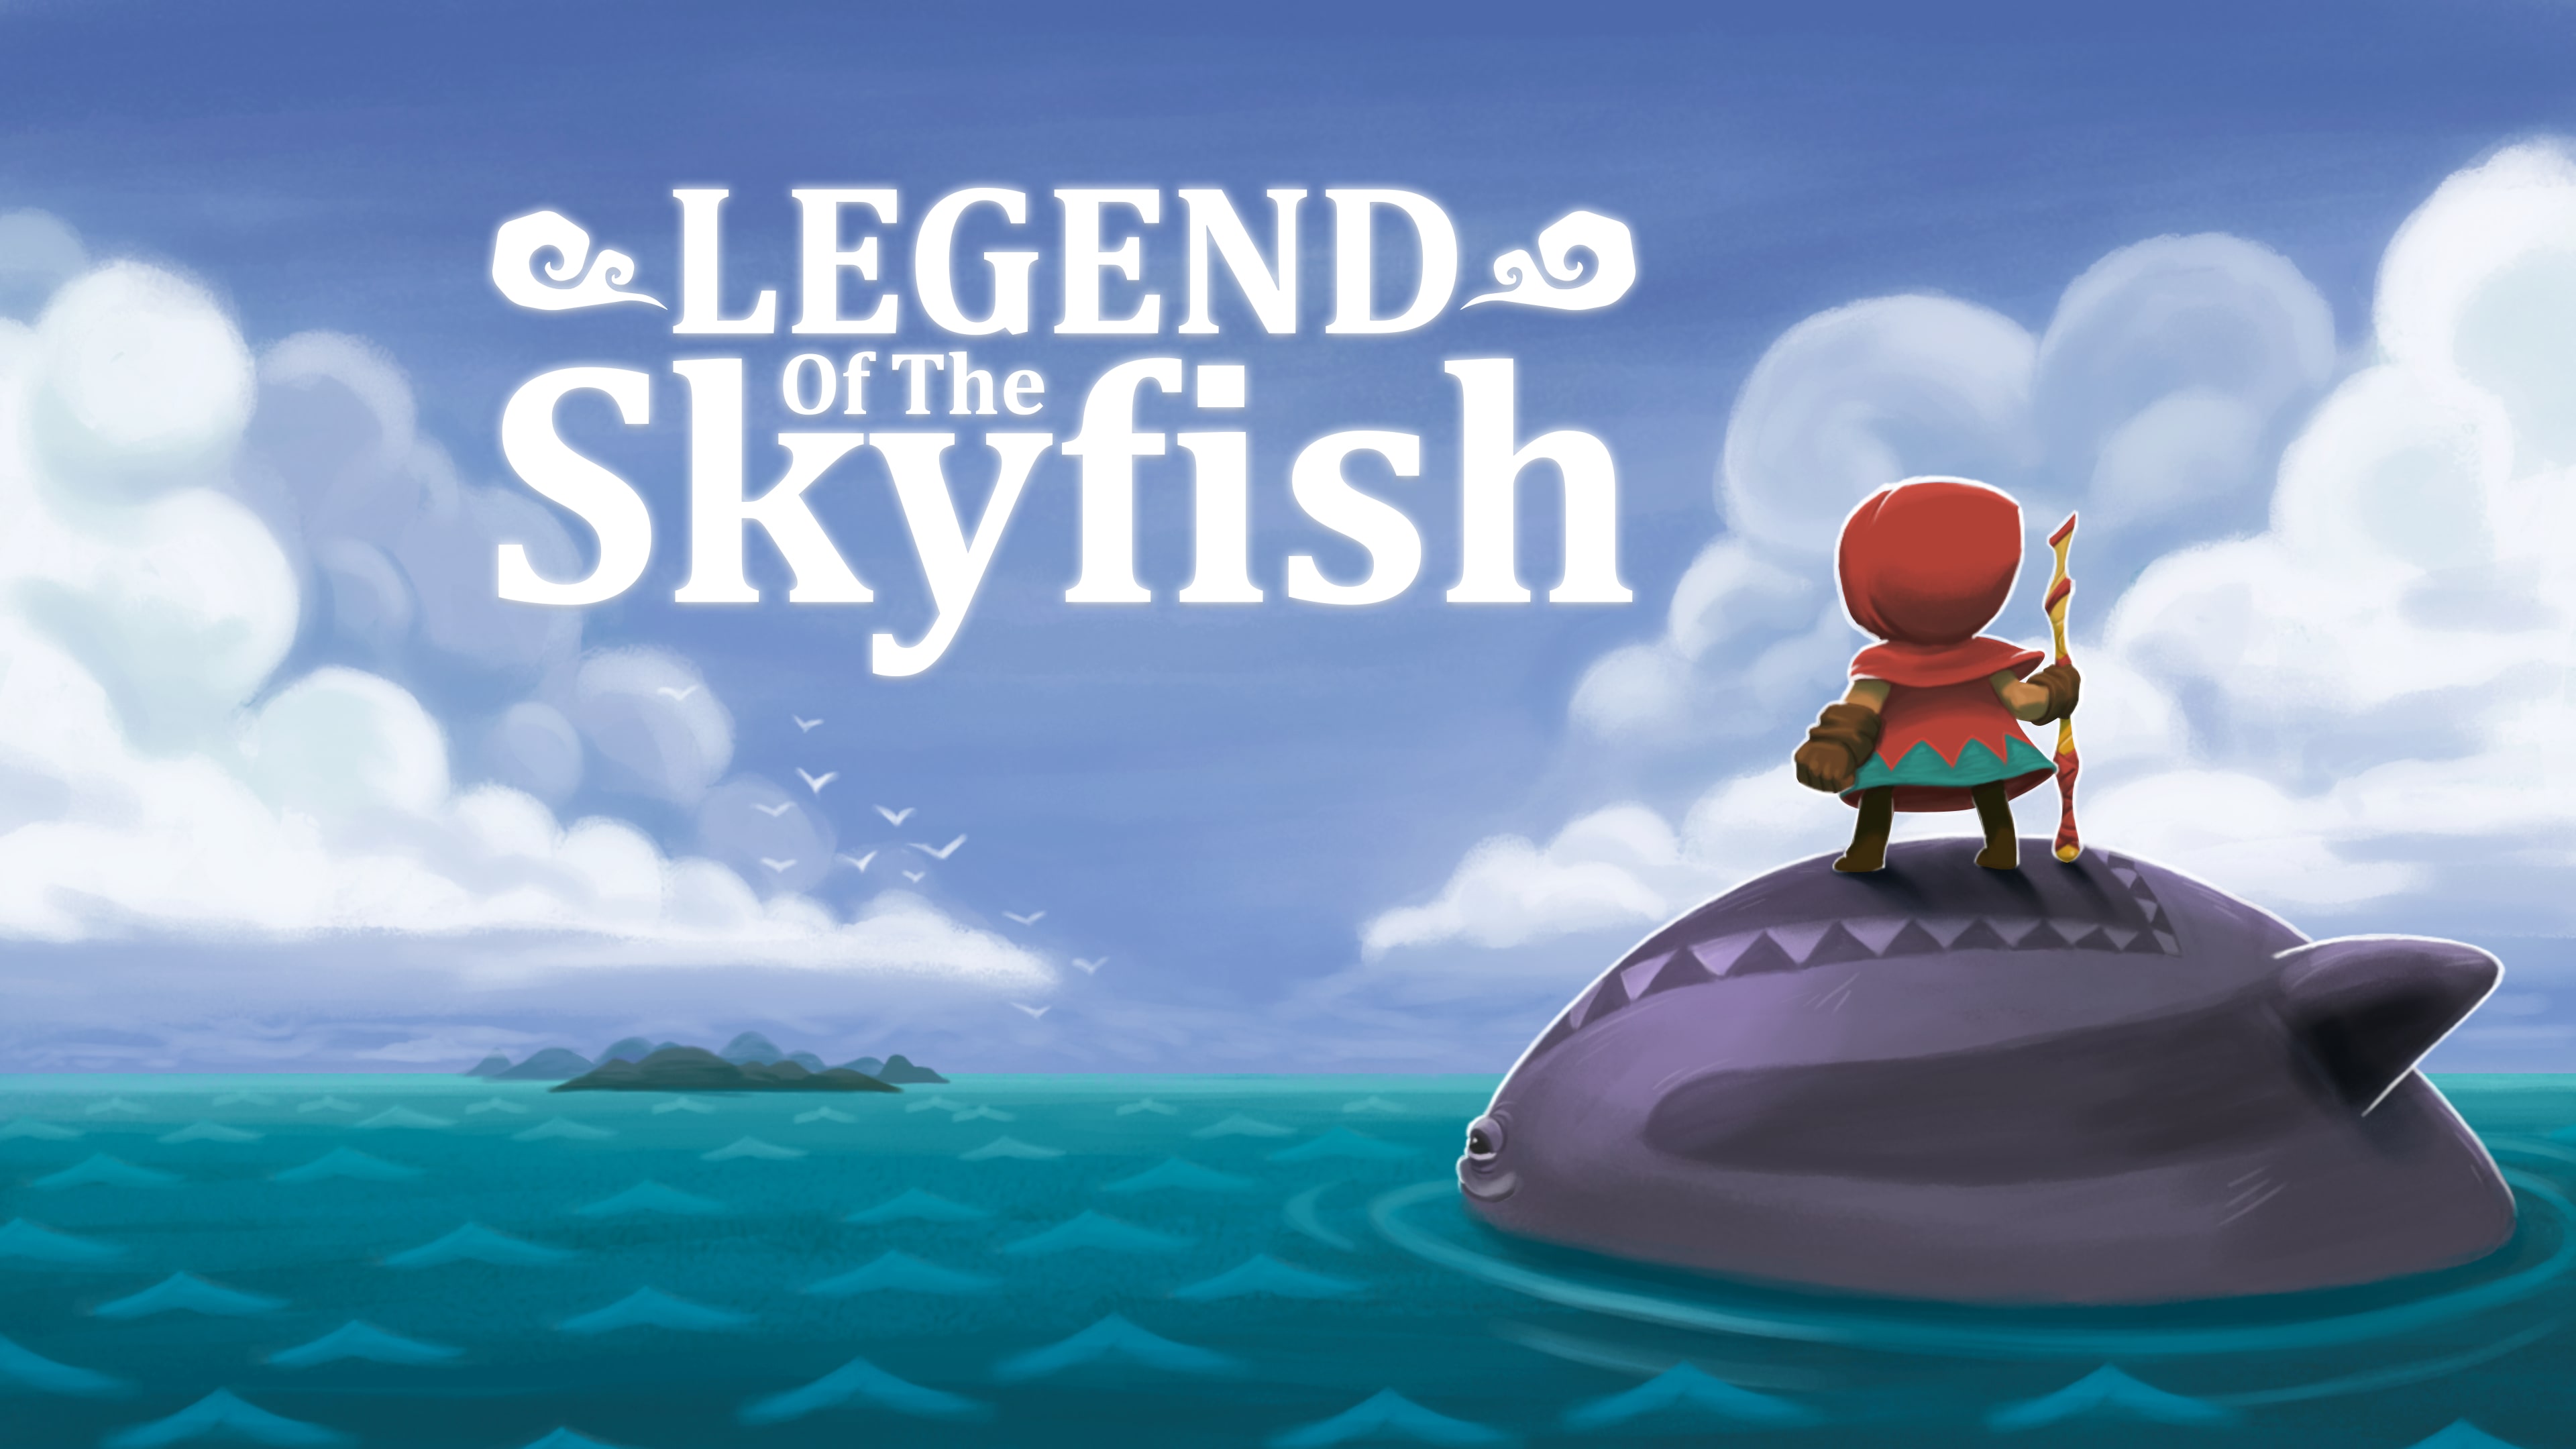 Legend of the Skyfish (中日英韓文版)